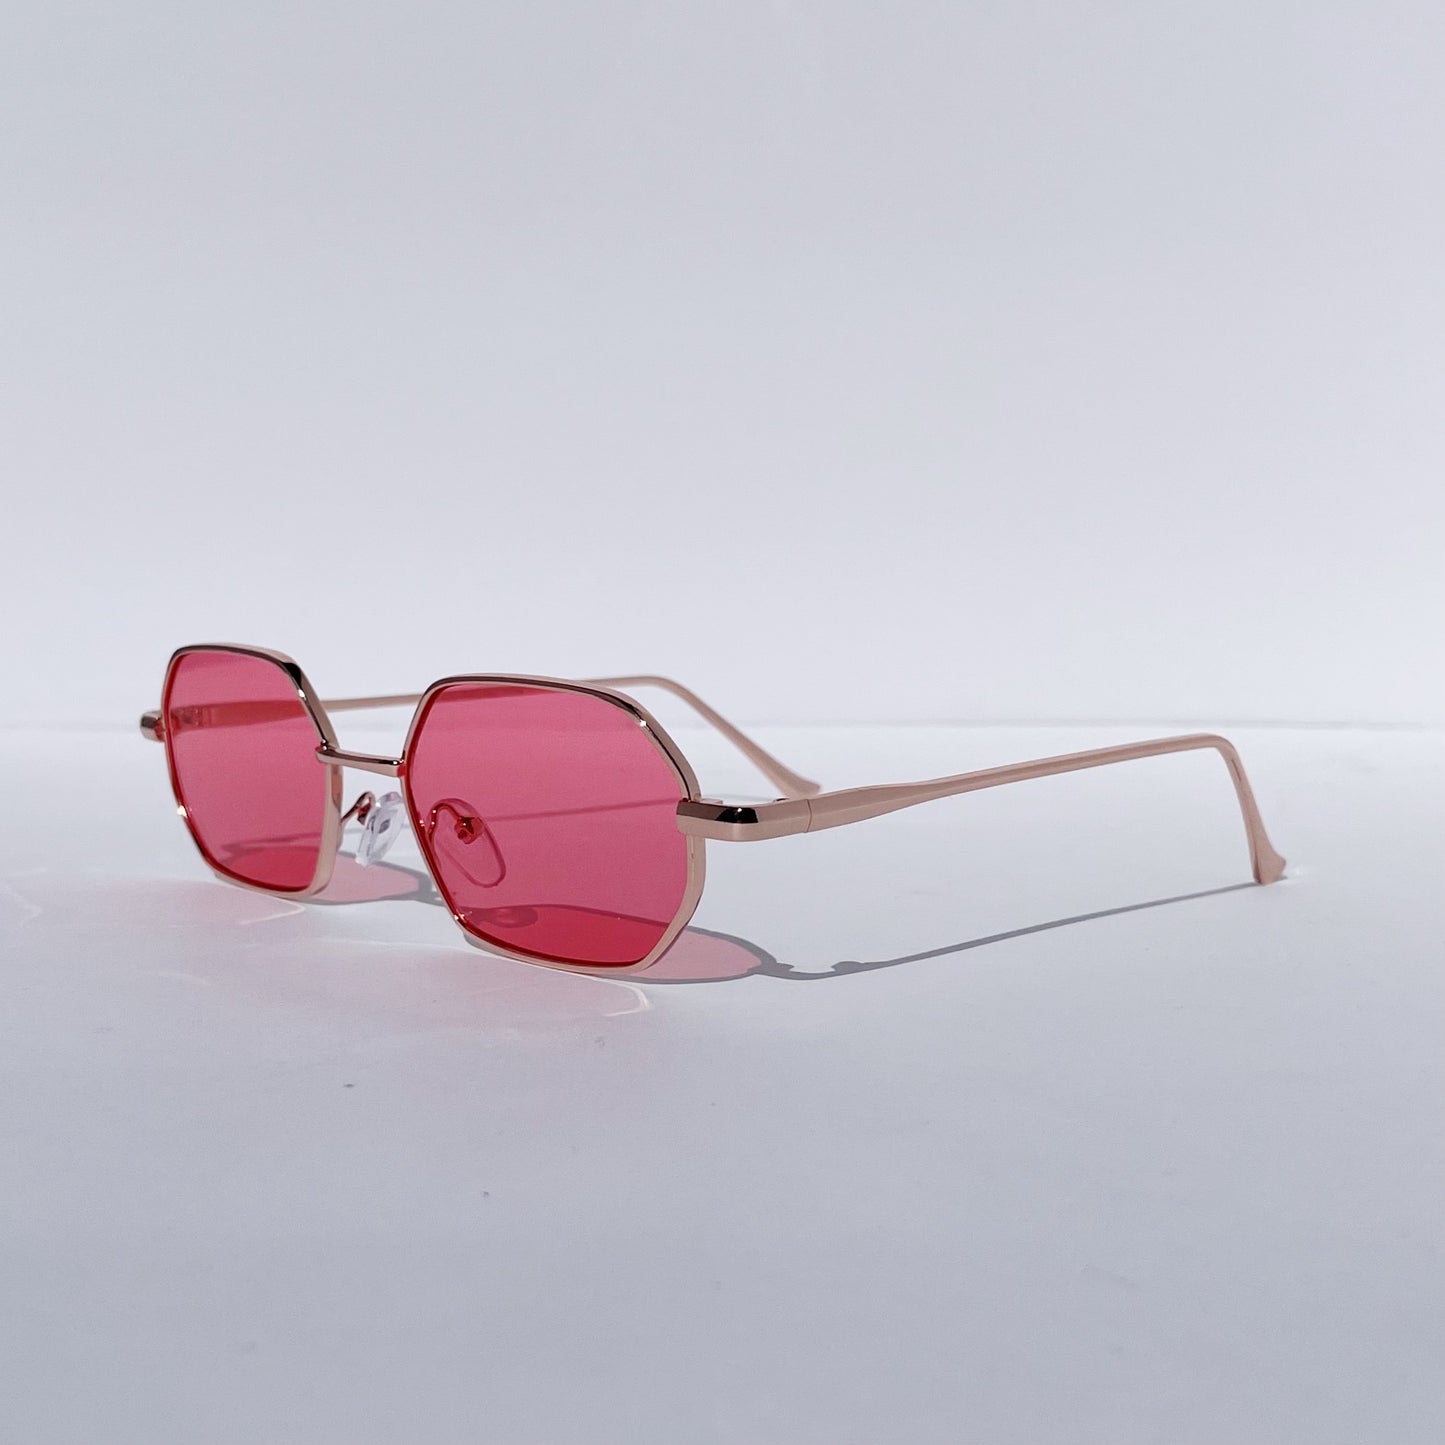 "Coachella" Sunglasses